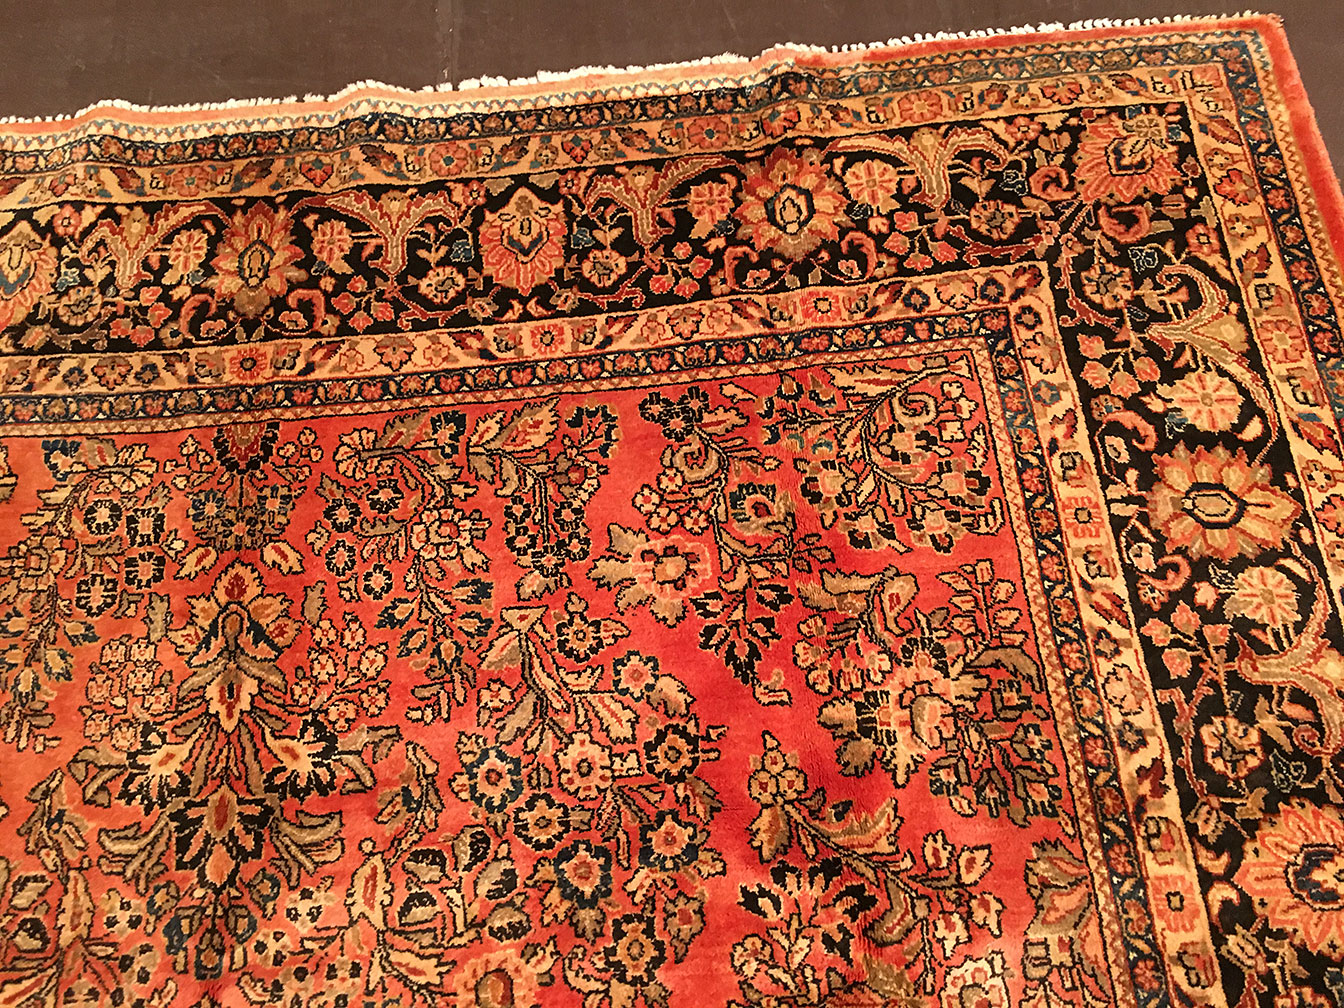 Antique sarouk Carpet - # 51024